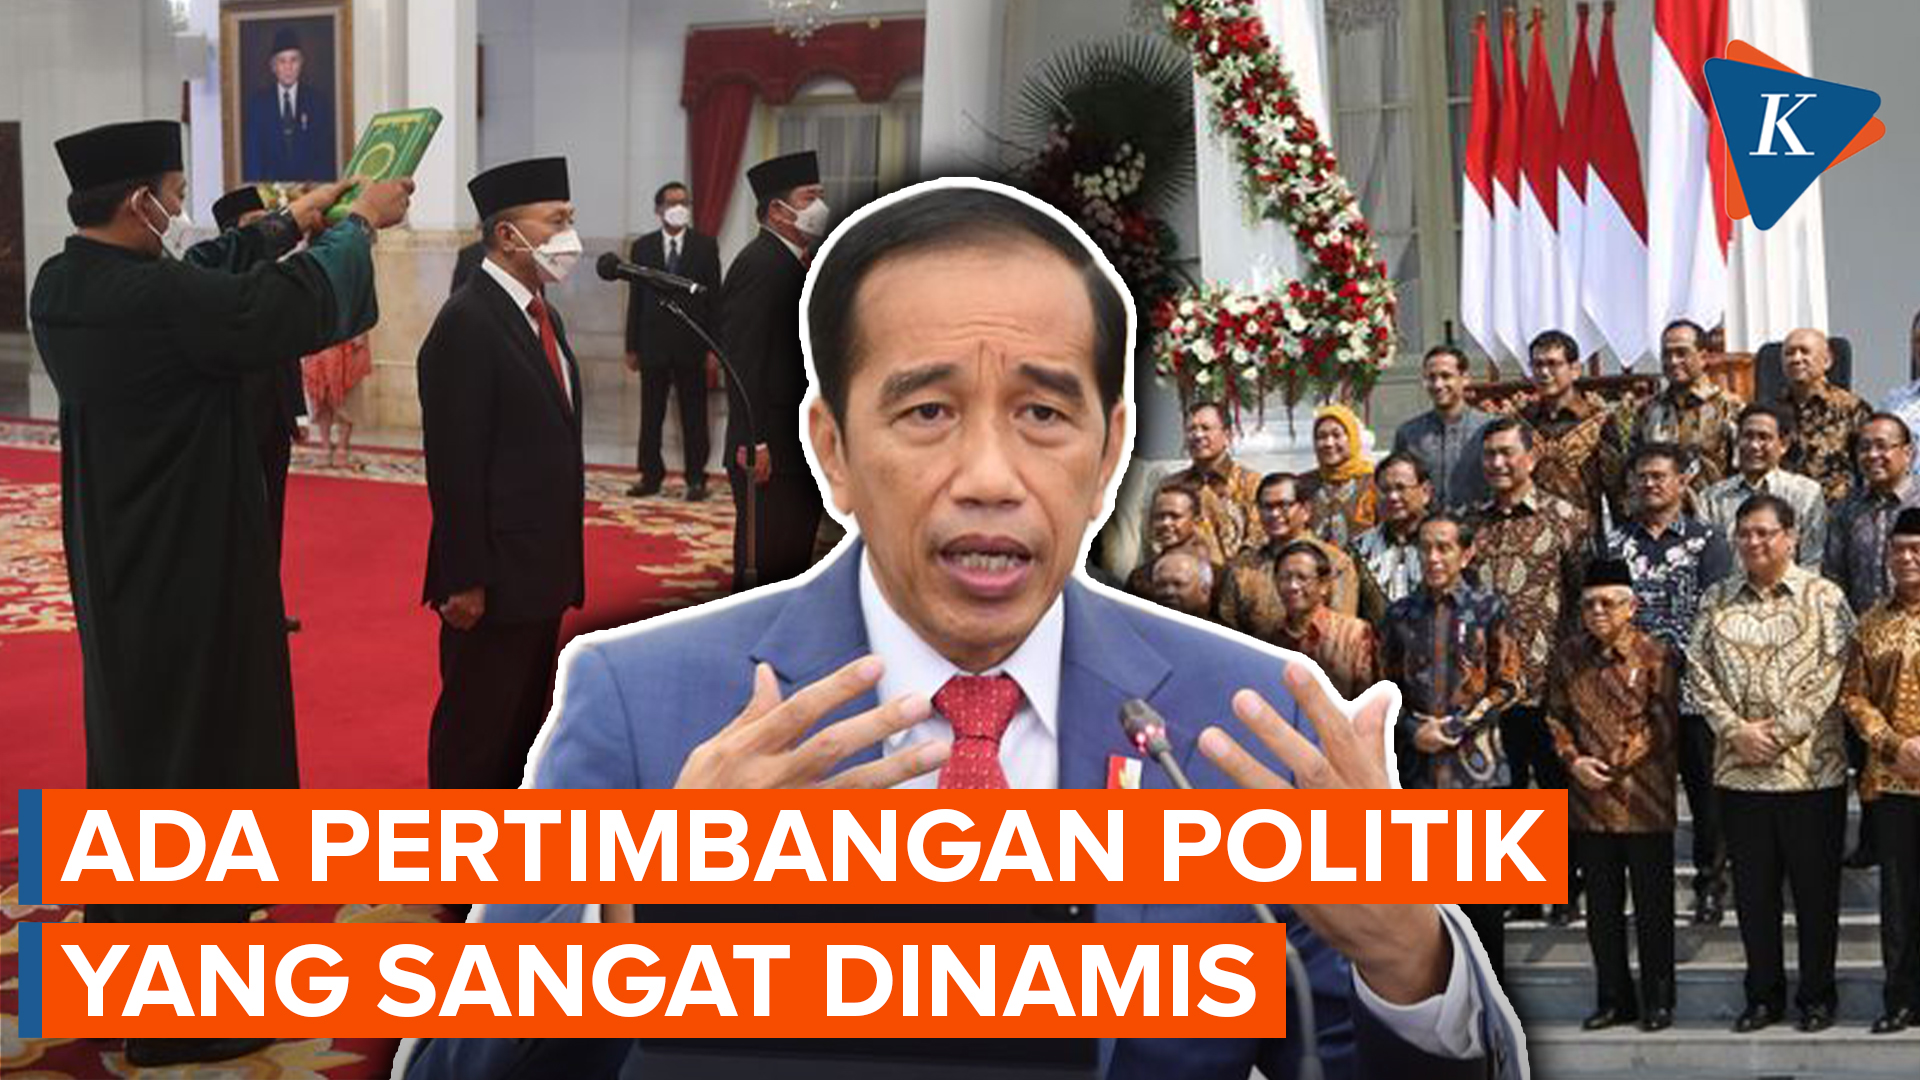 Relawan Duga Jokowi Punya Pertimbangan Politis sehingga Tak Jadi Reshuffle